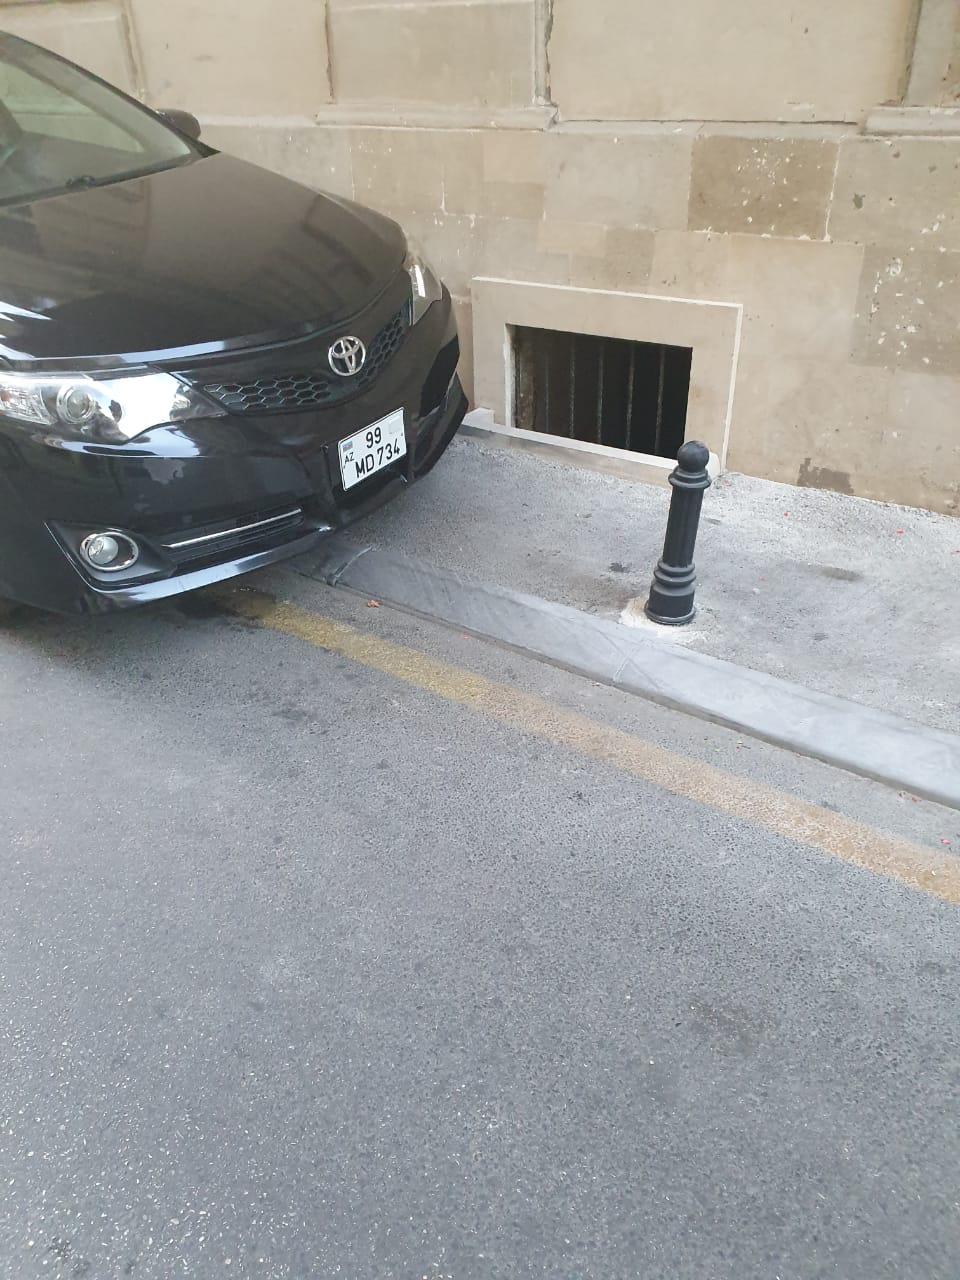 Как водители ломают тротуары в центре Баку [ФОТО]